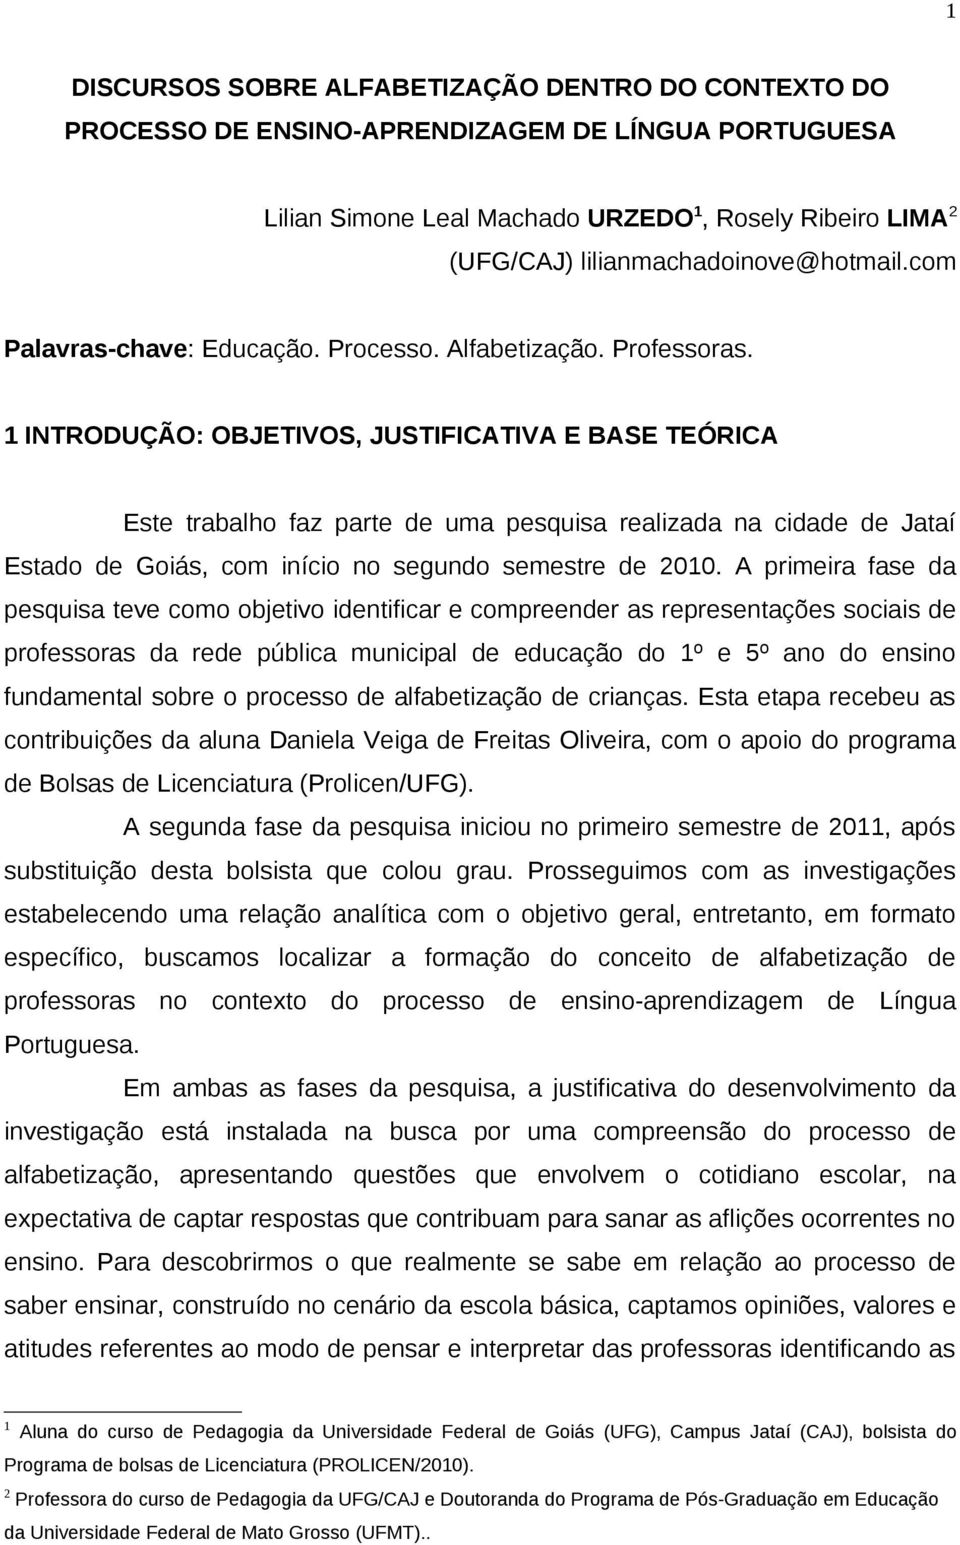 1 INTRODUÇÃO: OBJETIVOS, JUSTIFICATIVA E BASE TEÓRICA Este trabalho faz parte de uma pesquisa realizada na cidade de Jataí Estado de Goiás, com início no segundo semestre de 2010.